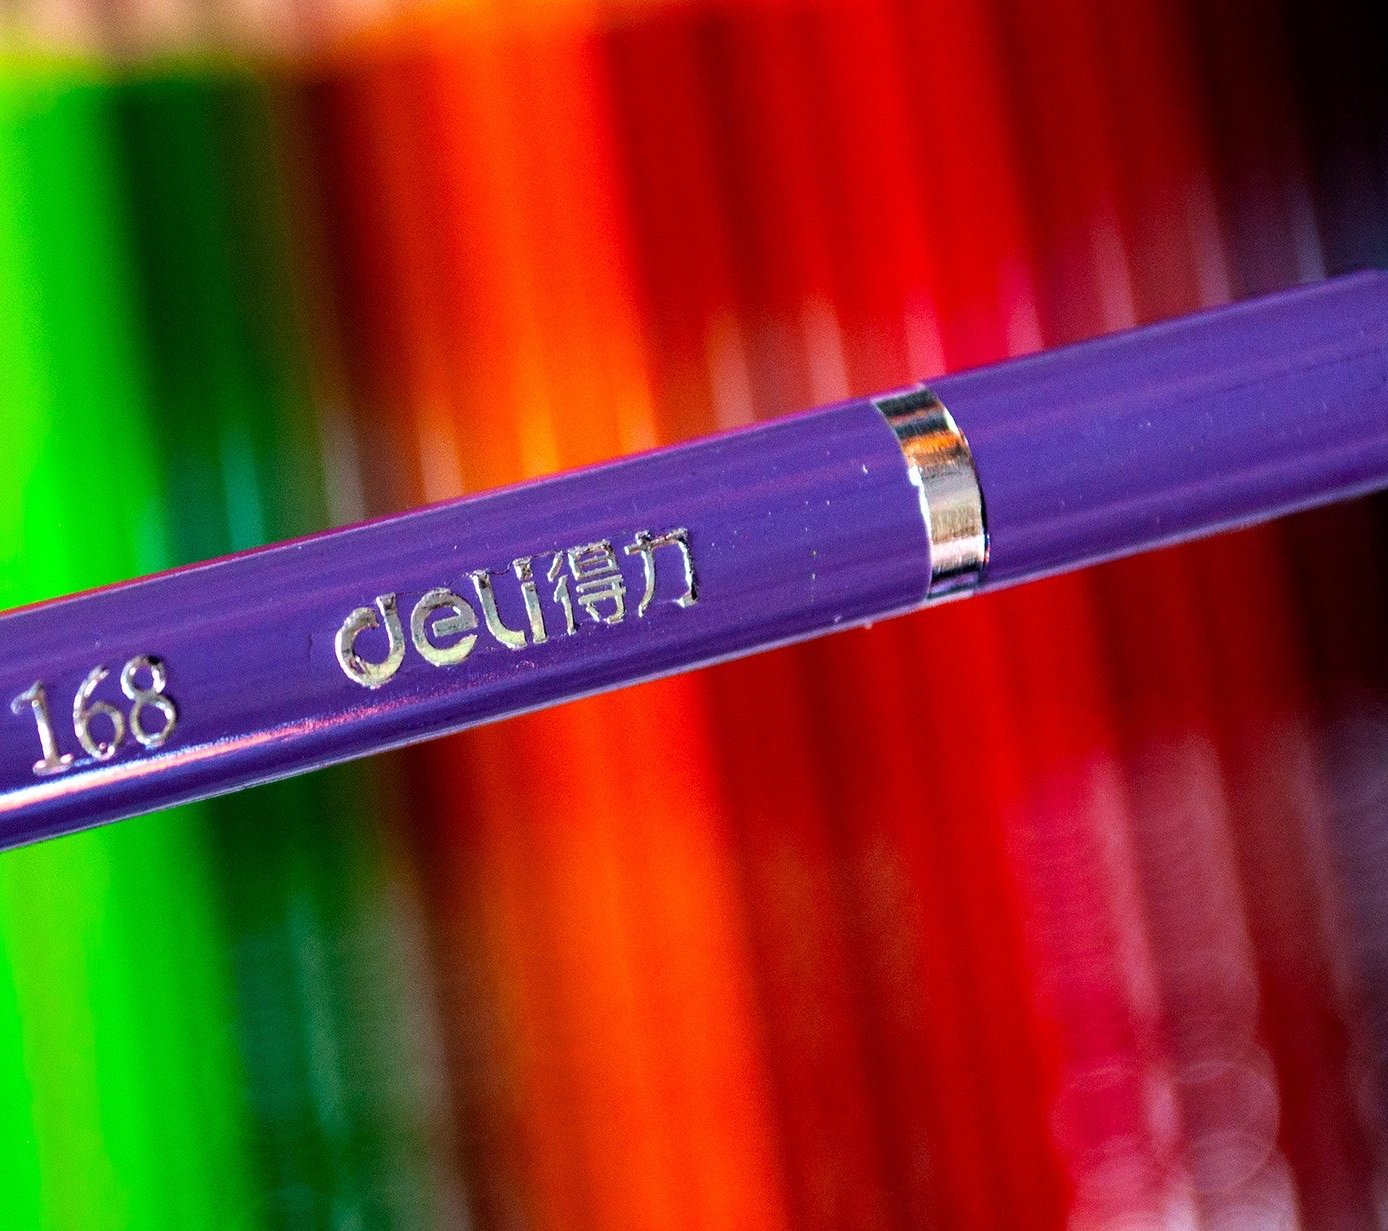 Arrtx 126 lápices de colores para colorear para adultos, juego de lápices  de colores de núcleo suave de alta calidad para dibujar mezcla, sombreado